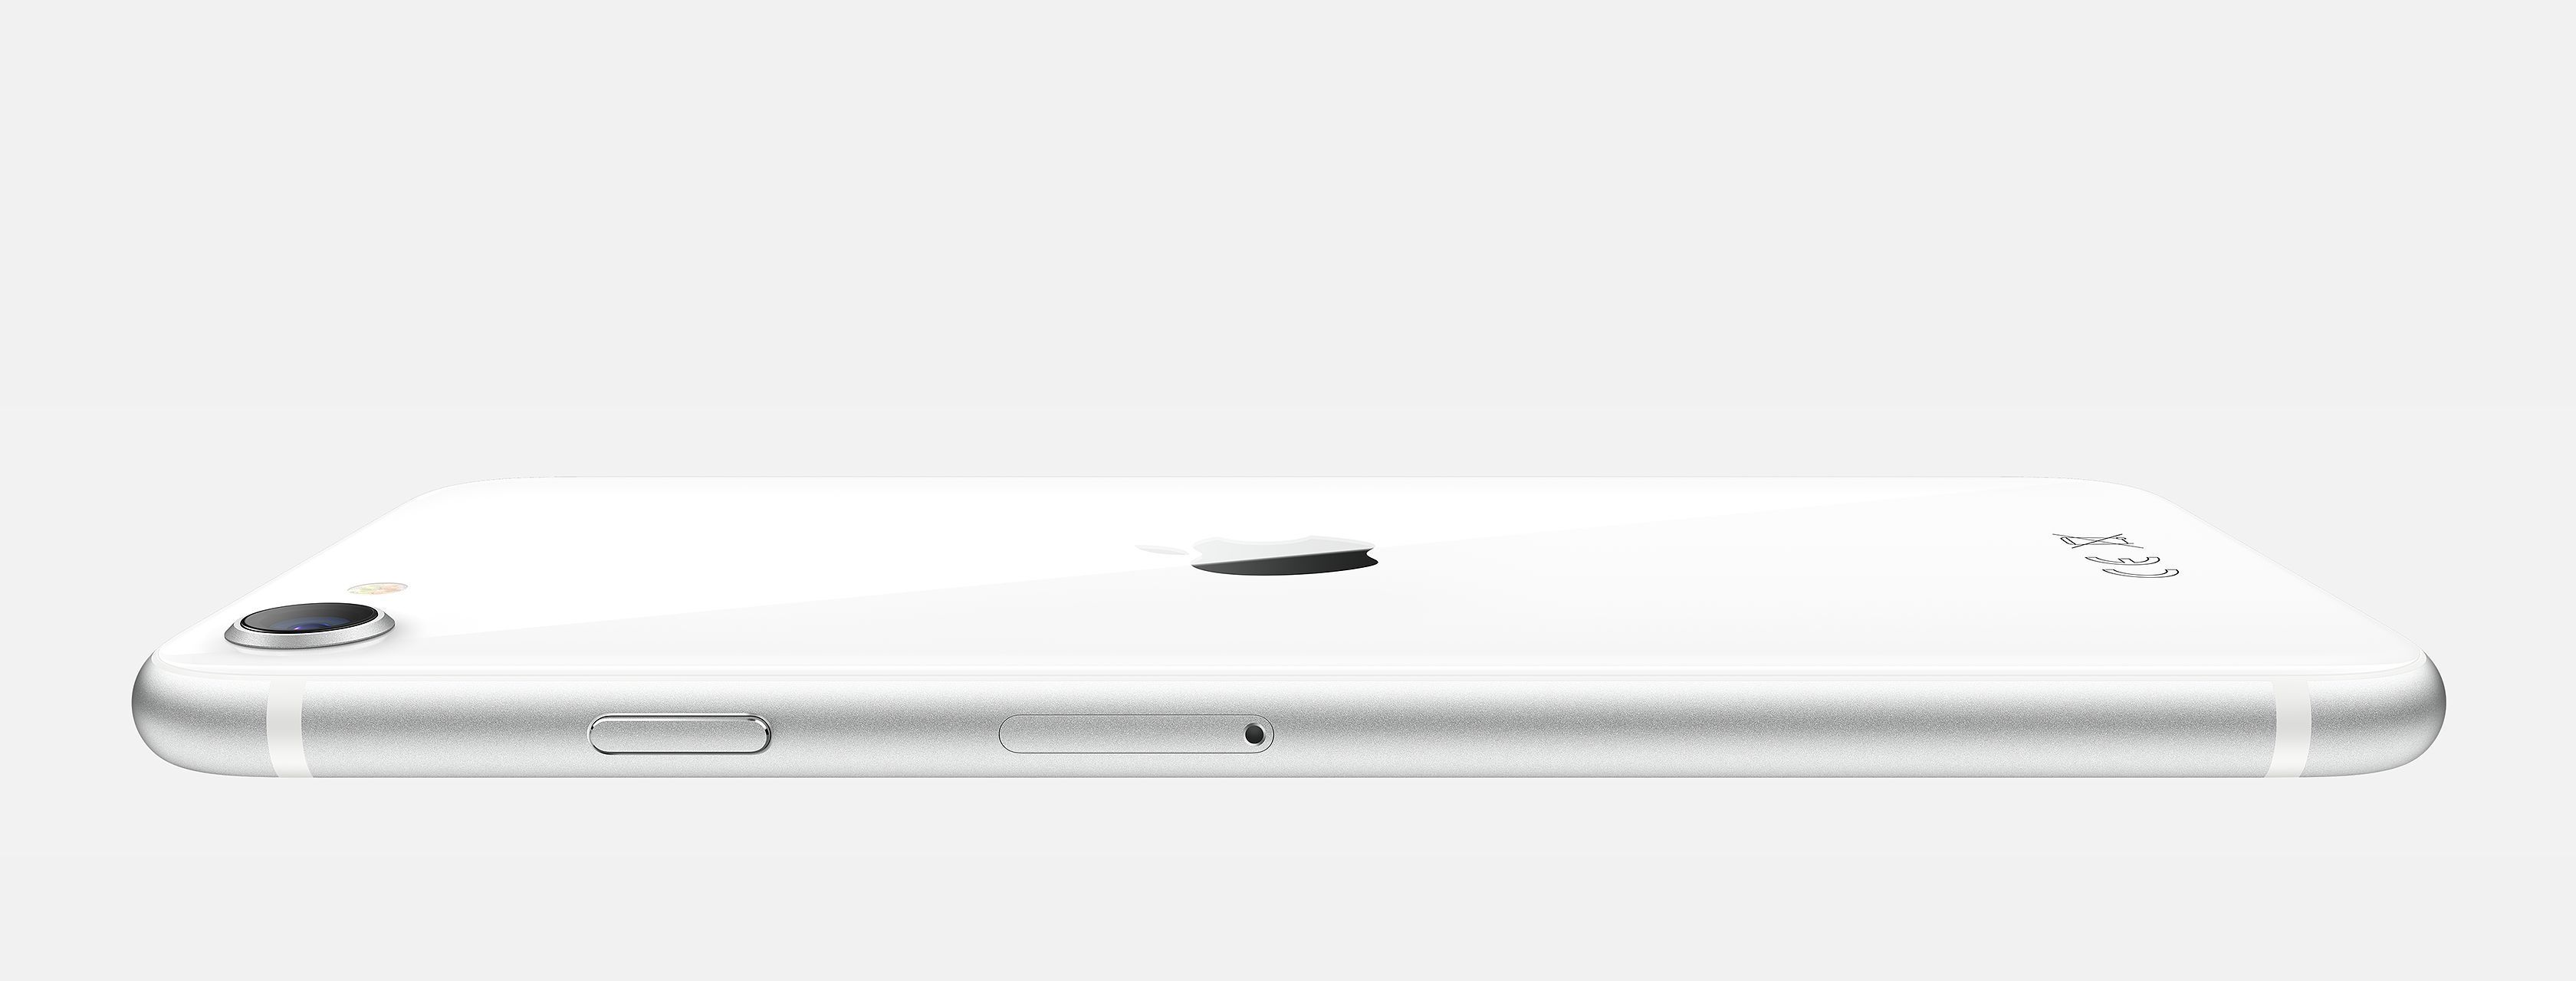 Apple dévoile son iPhone SE 2020 à prix mini #2